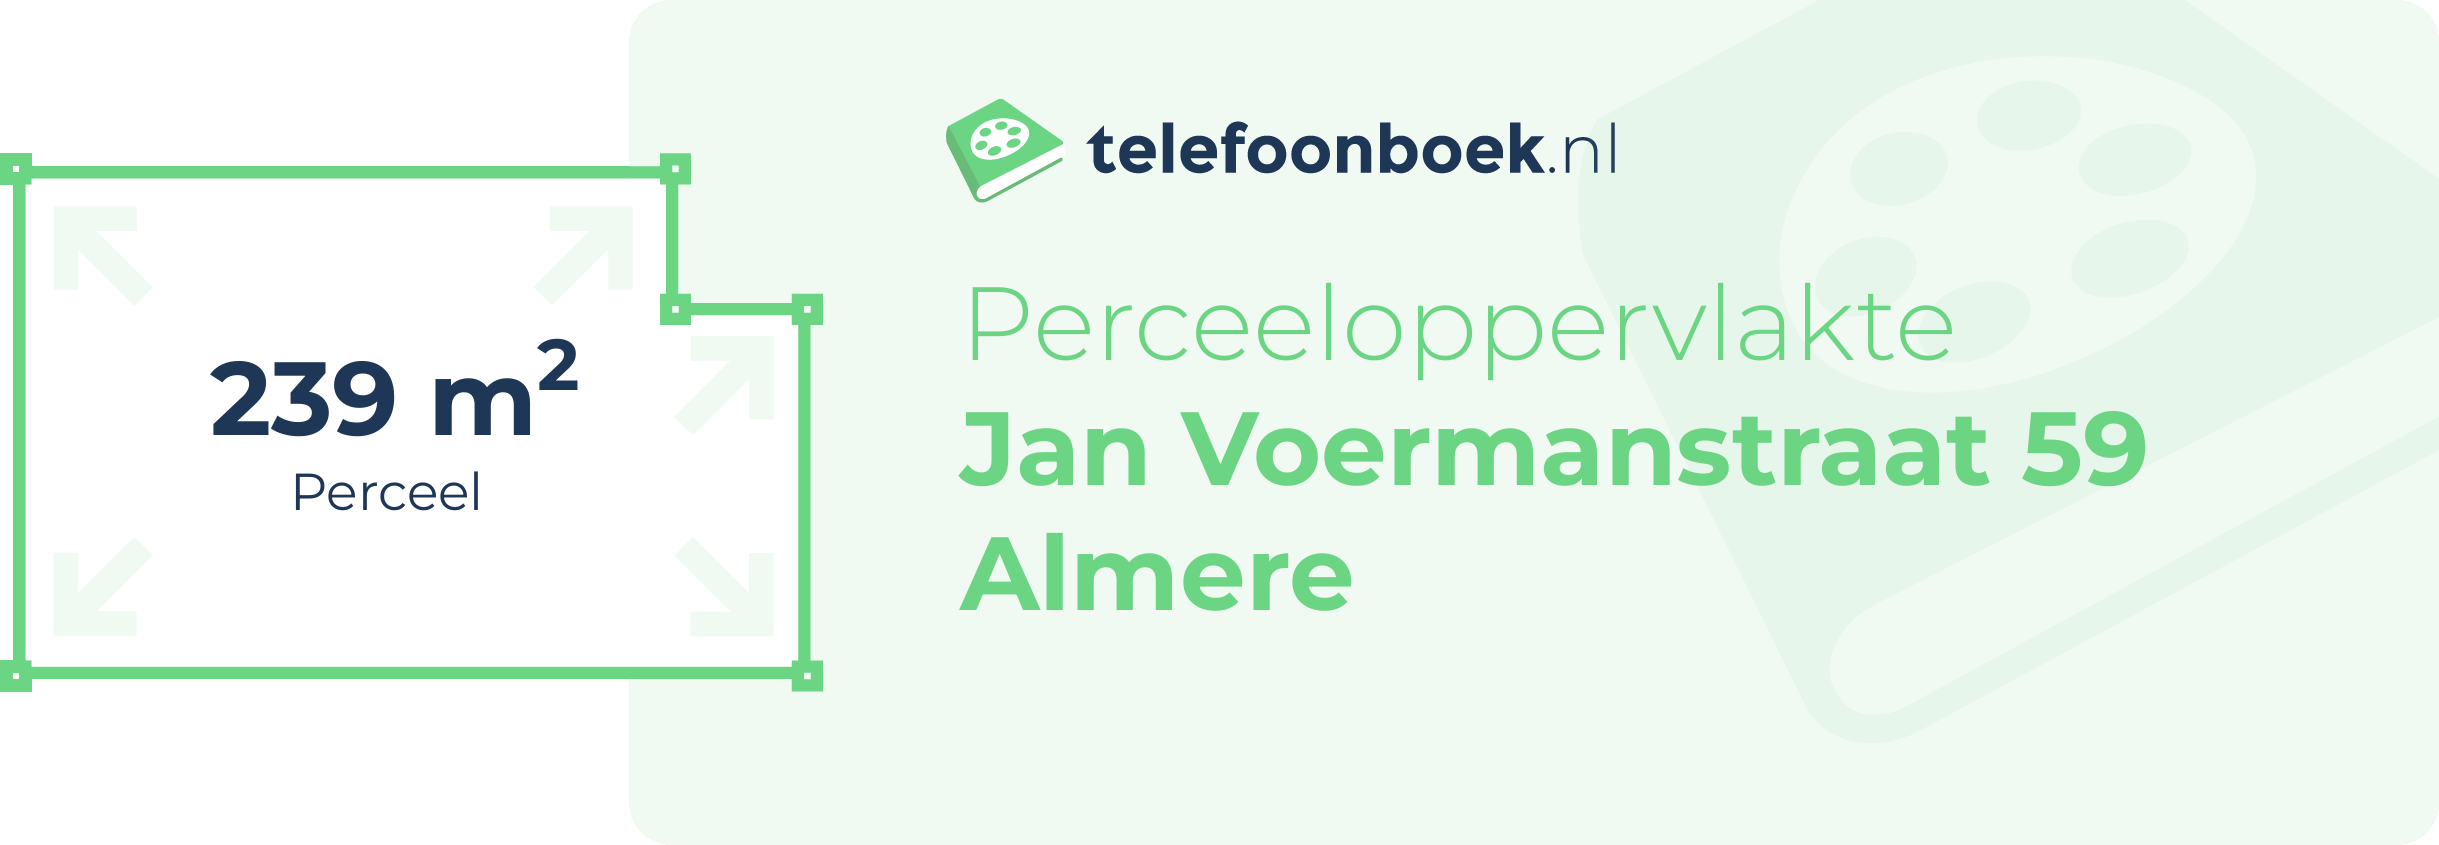 Perceeloppervlakte Jan Voermanstraat 59 Almere